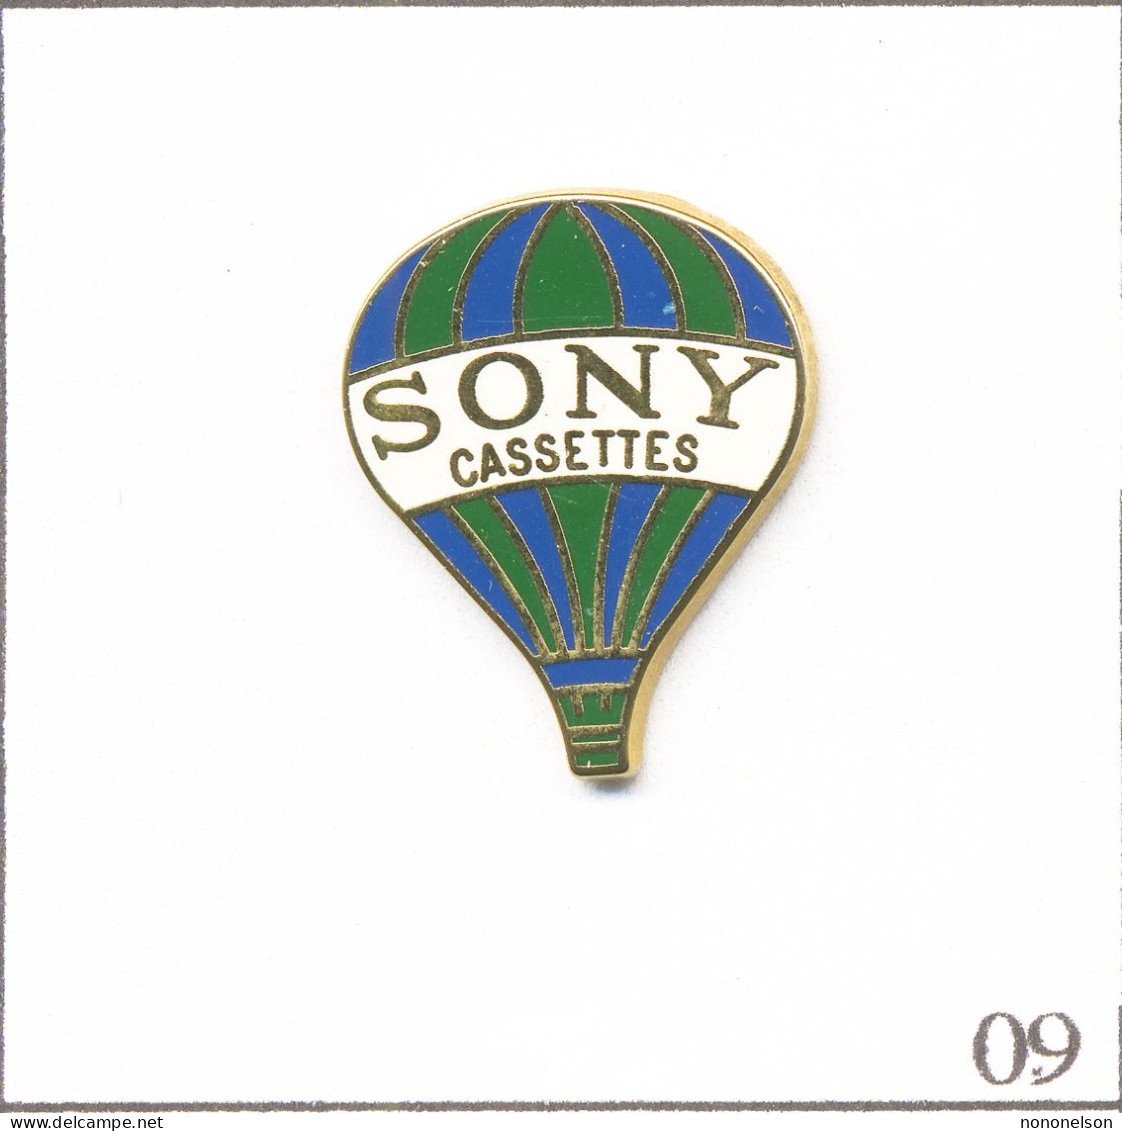 Pin's Transport - Montgolfière / Ballon “Sony“ - Rayures Vertes Et Bleues. Est. Sony 1989. Zamac. T953-09 - Mongolfiere